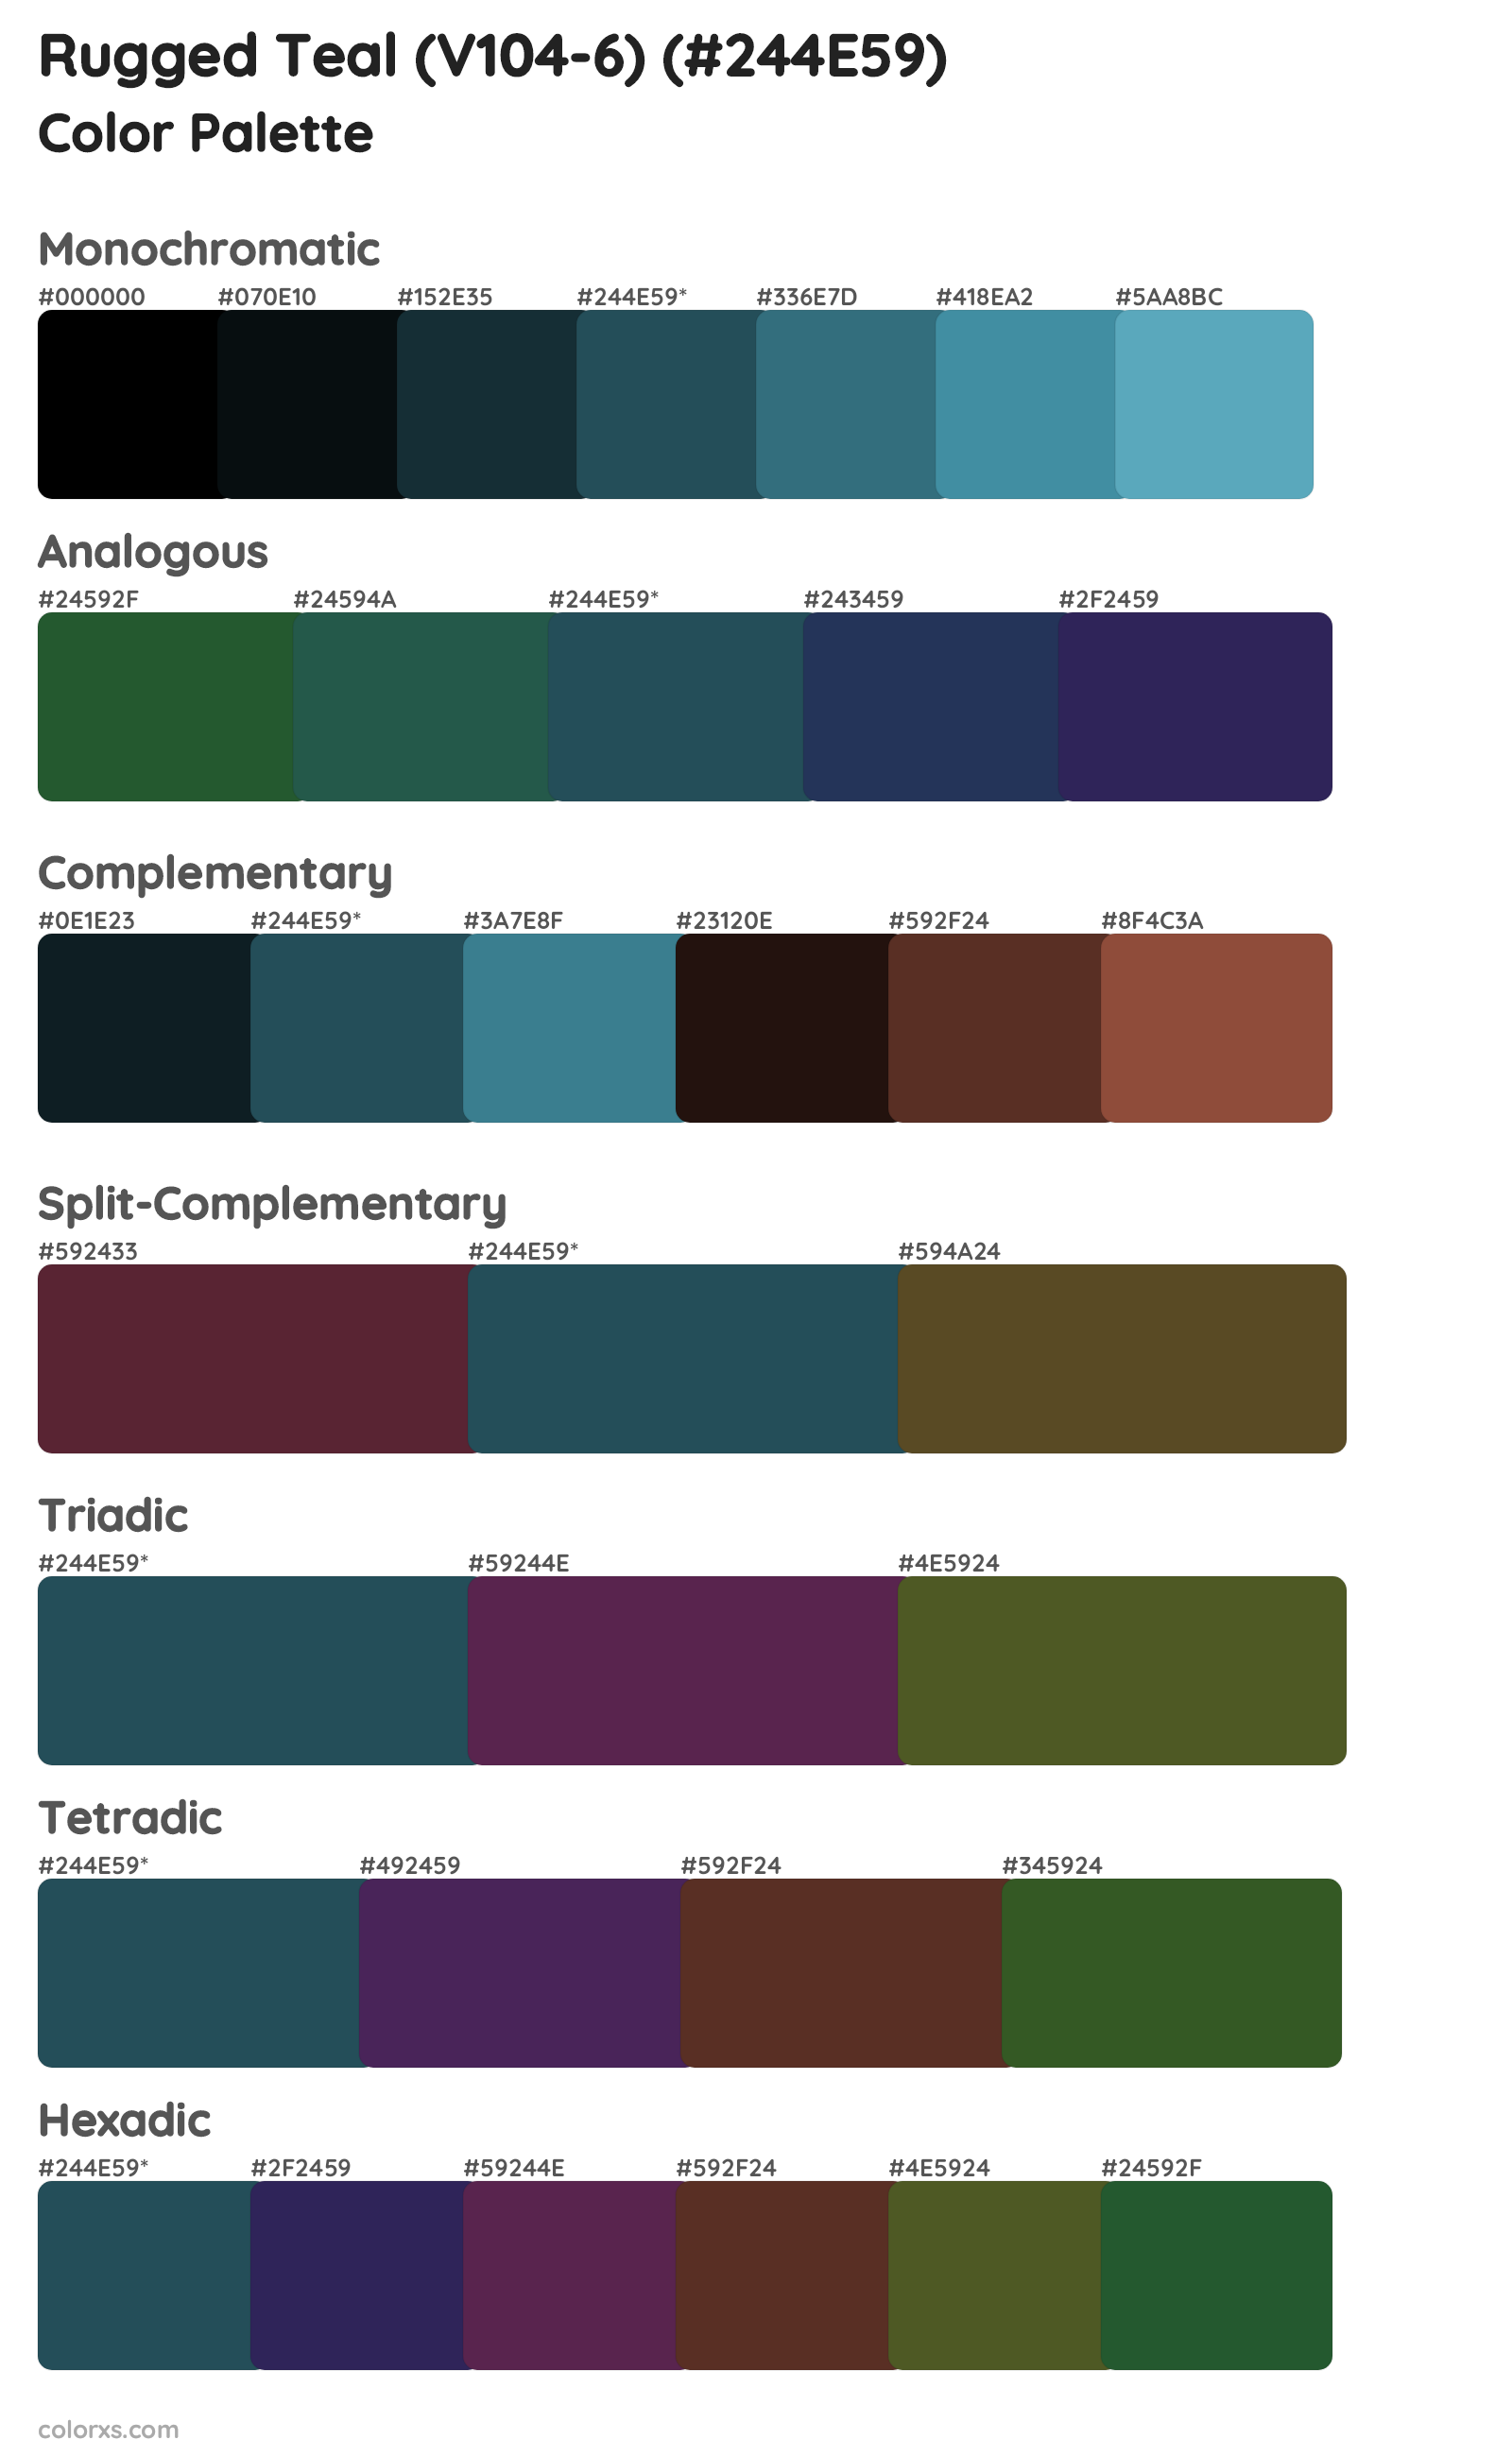 Rugged Teal (V104-6) Color Scheme Palettes